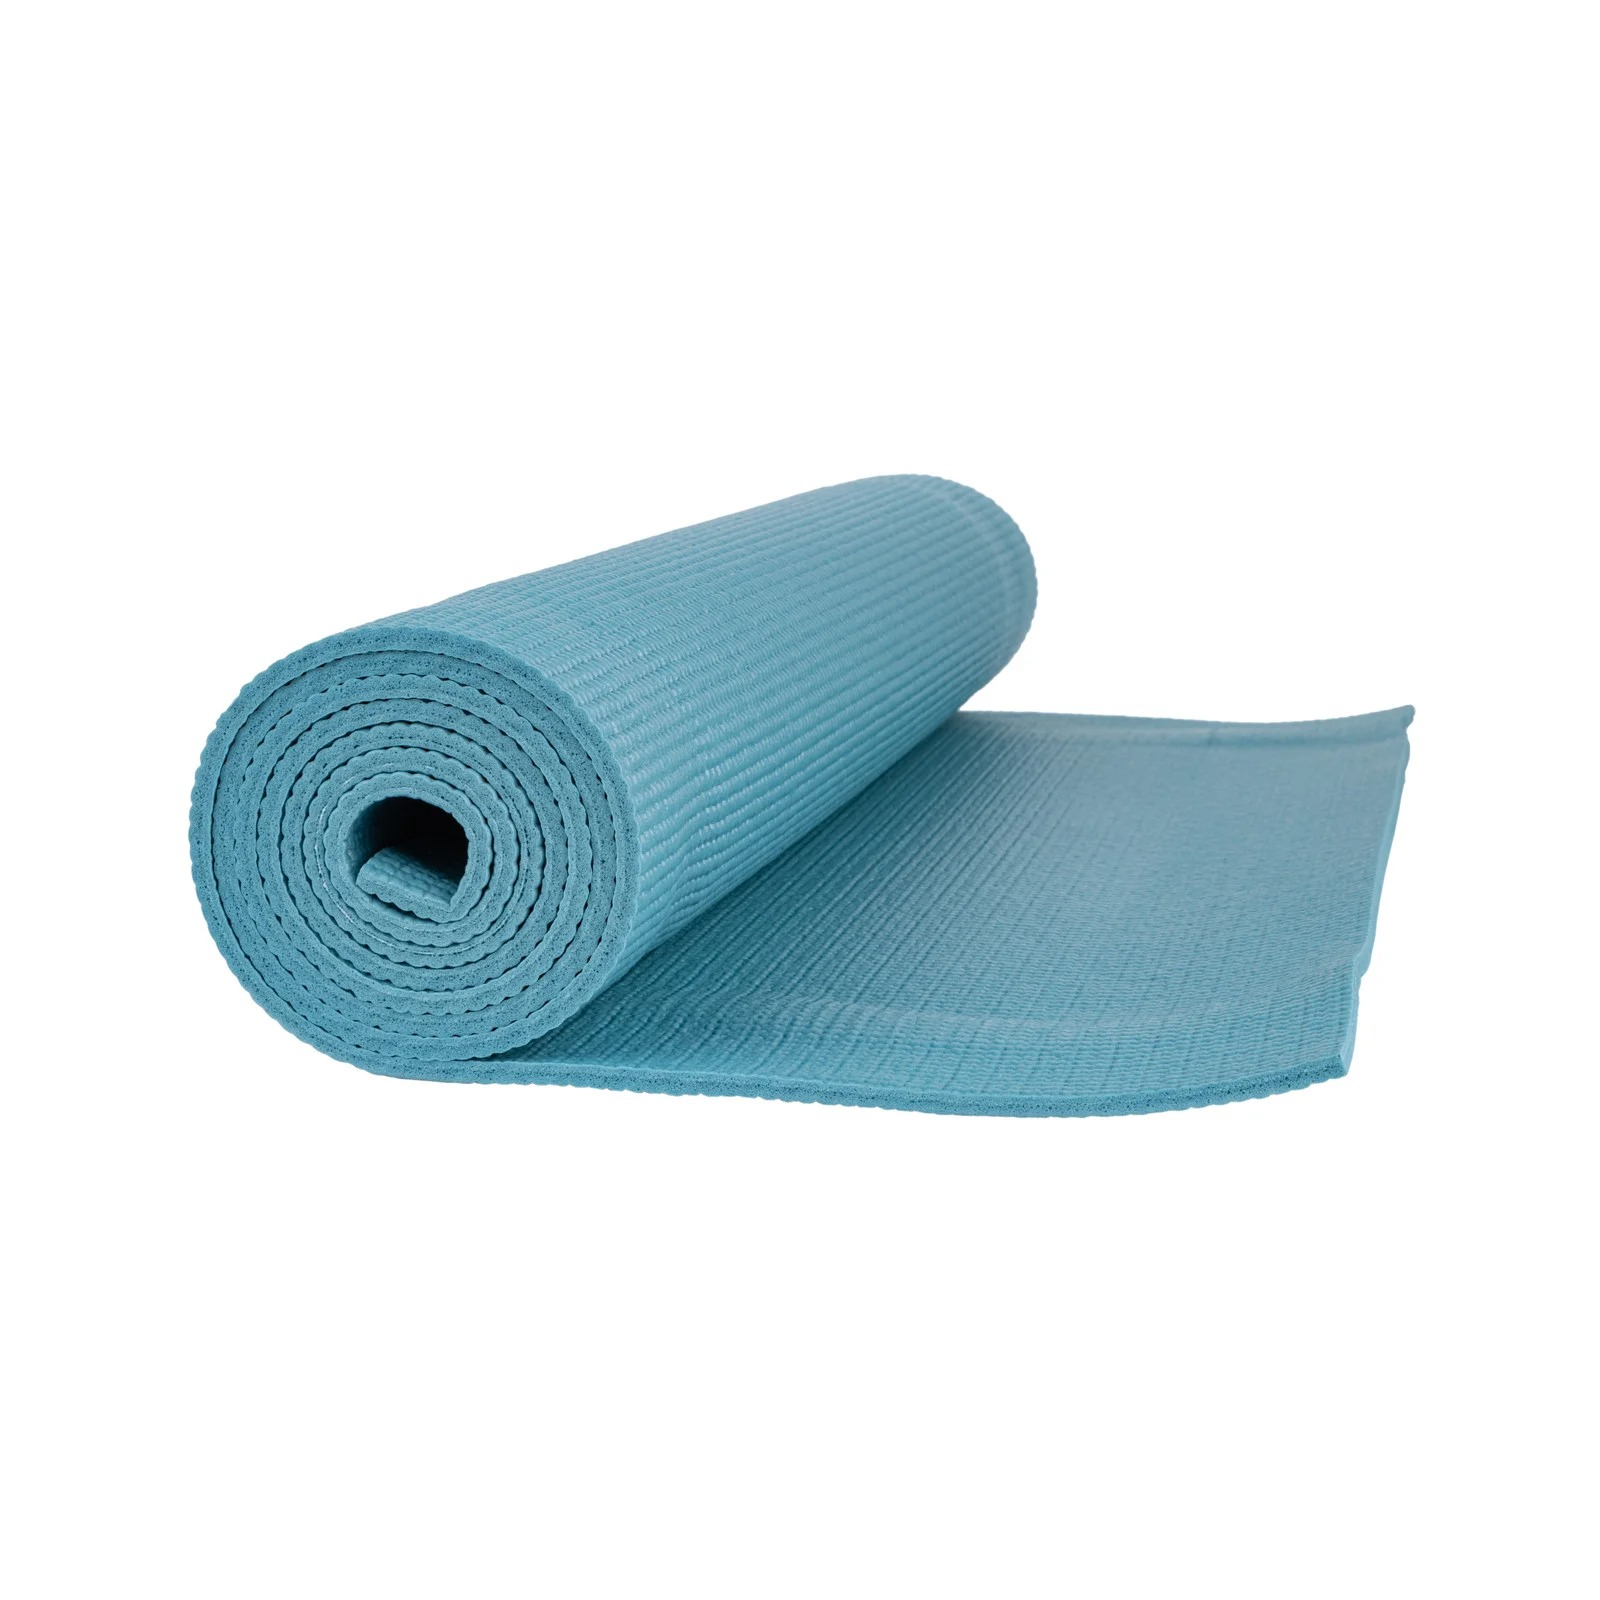 Килимок для йоги PowerPlay 4010 PVC Yoga Mat 173 x 61 x 0.6 см Рожевий (PP_4010_Rose_(173*0,6)) зображення 6